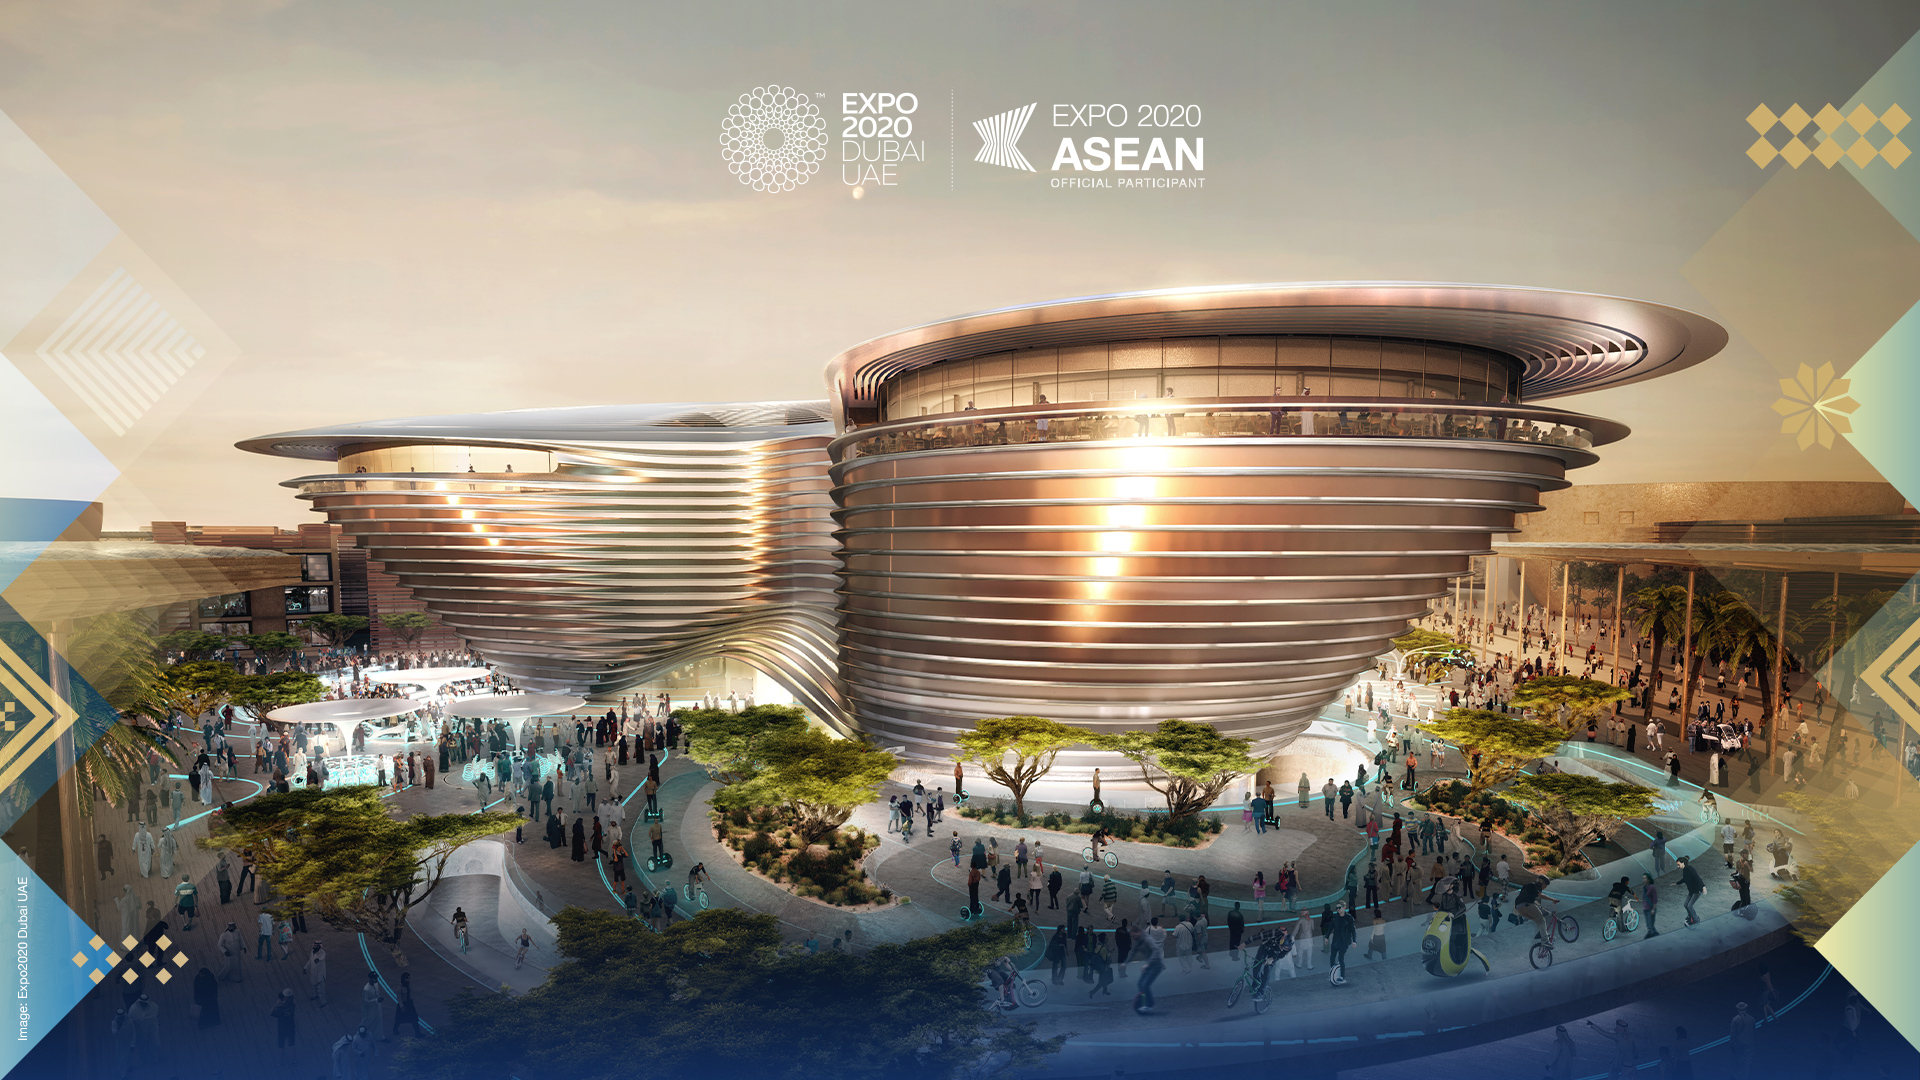 Expo 2020 Dubai - Asean